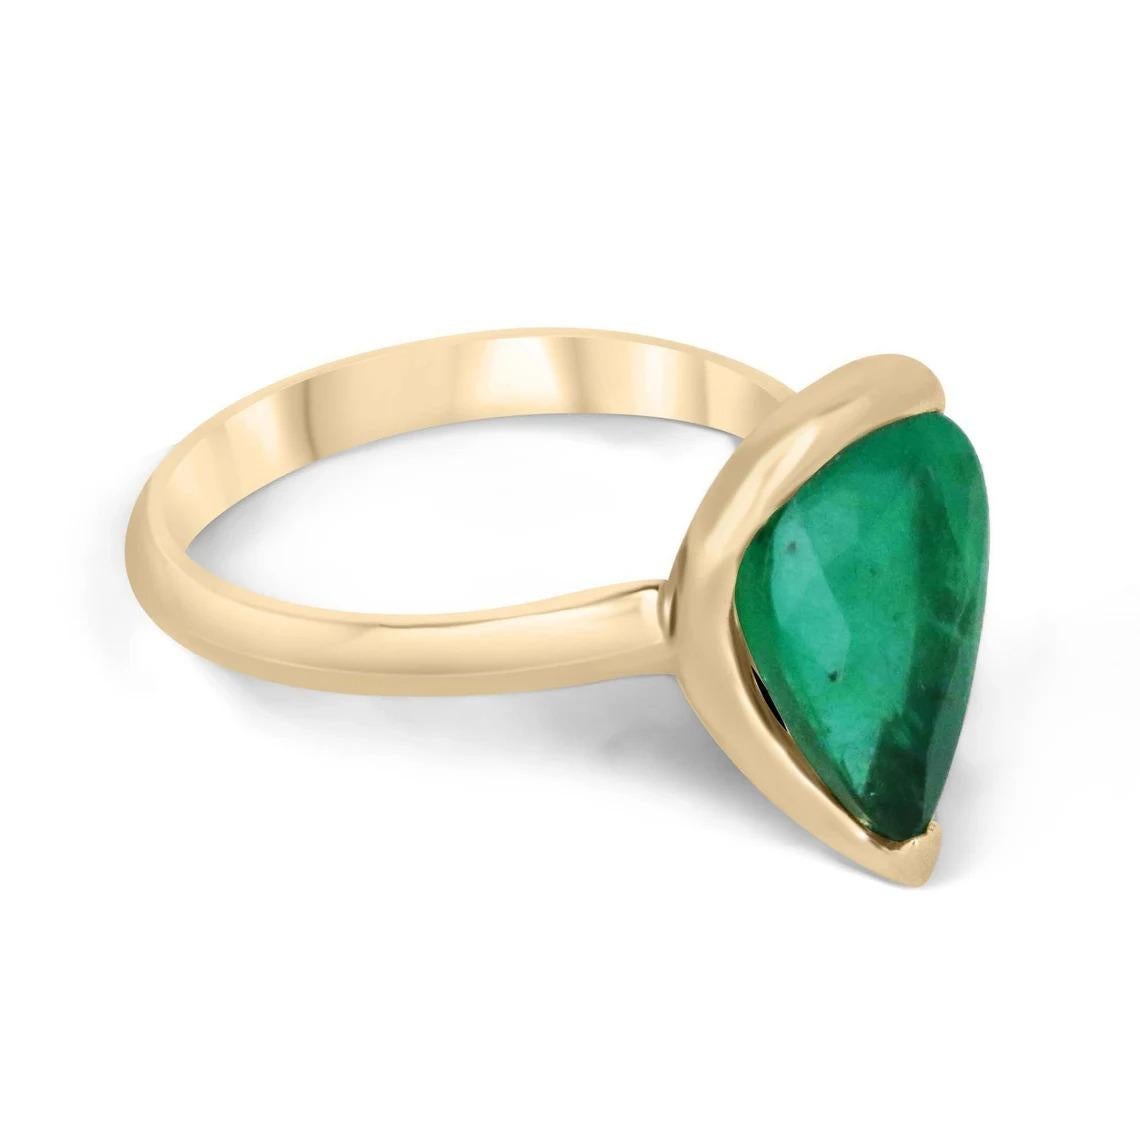 Wir präsentieren einen atemberaubenden Solitär-Smaragdring, der Eleganz und Luxus ausstrahlt. Das Herzstück dieses exquisiten Schmuckstücks ist ein prächtiger kolumbianischer Smaragd von 3,10 Karat im Birnenschliff, der durch seine dunkelgrüne Farbe